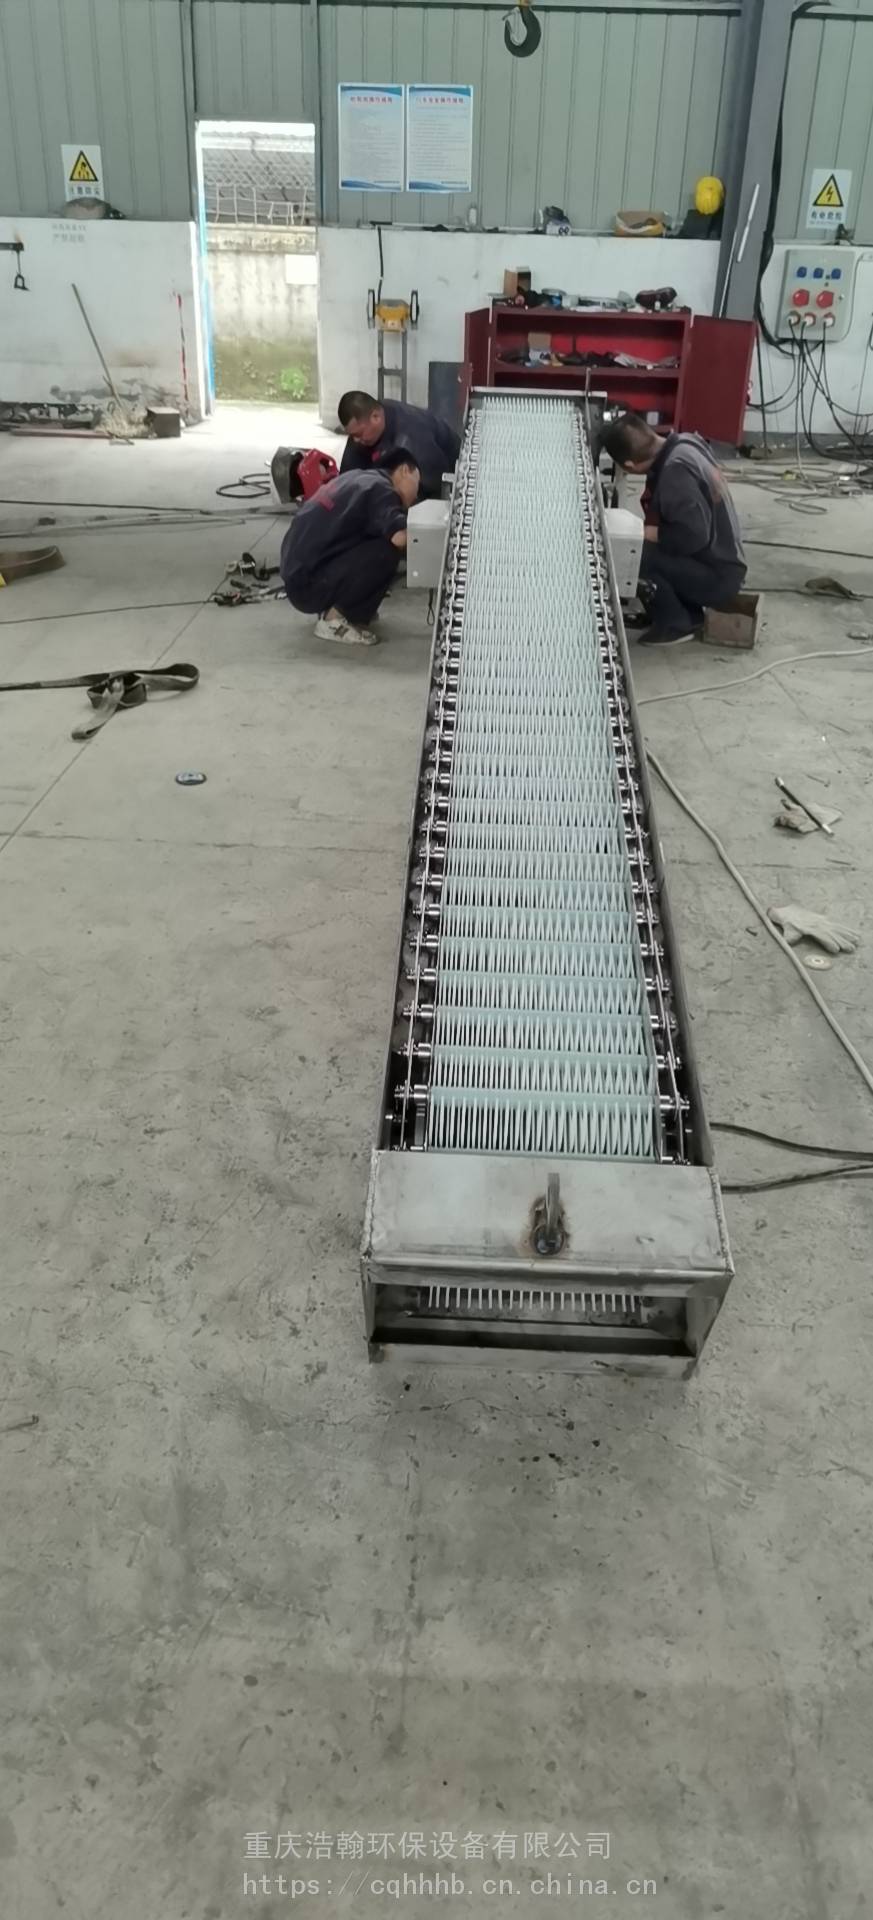 重庆浩翰环保设备厂专注生产回转式格栅除污机